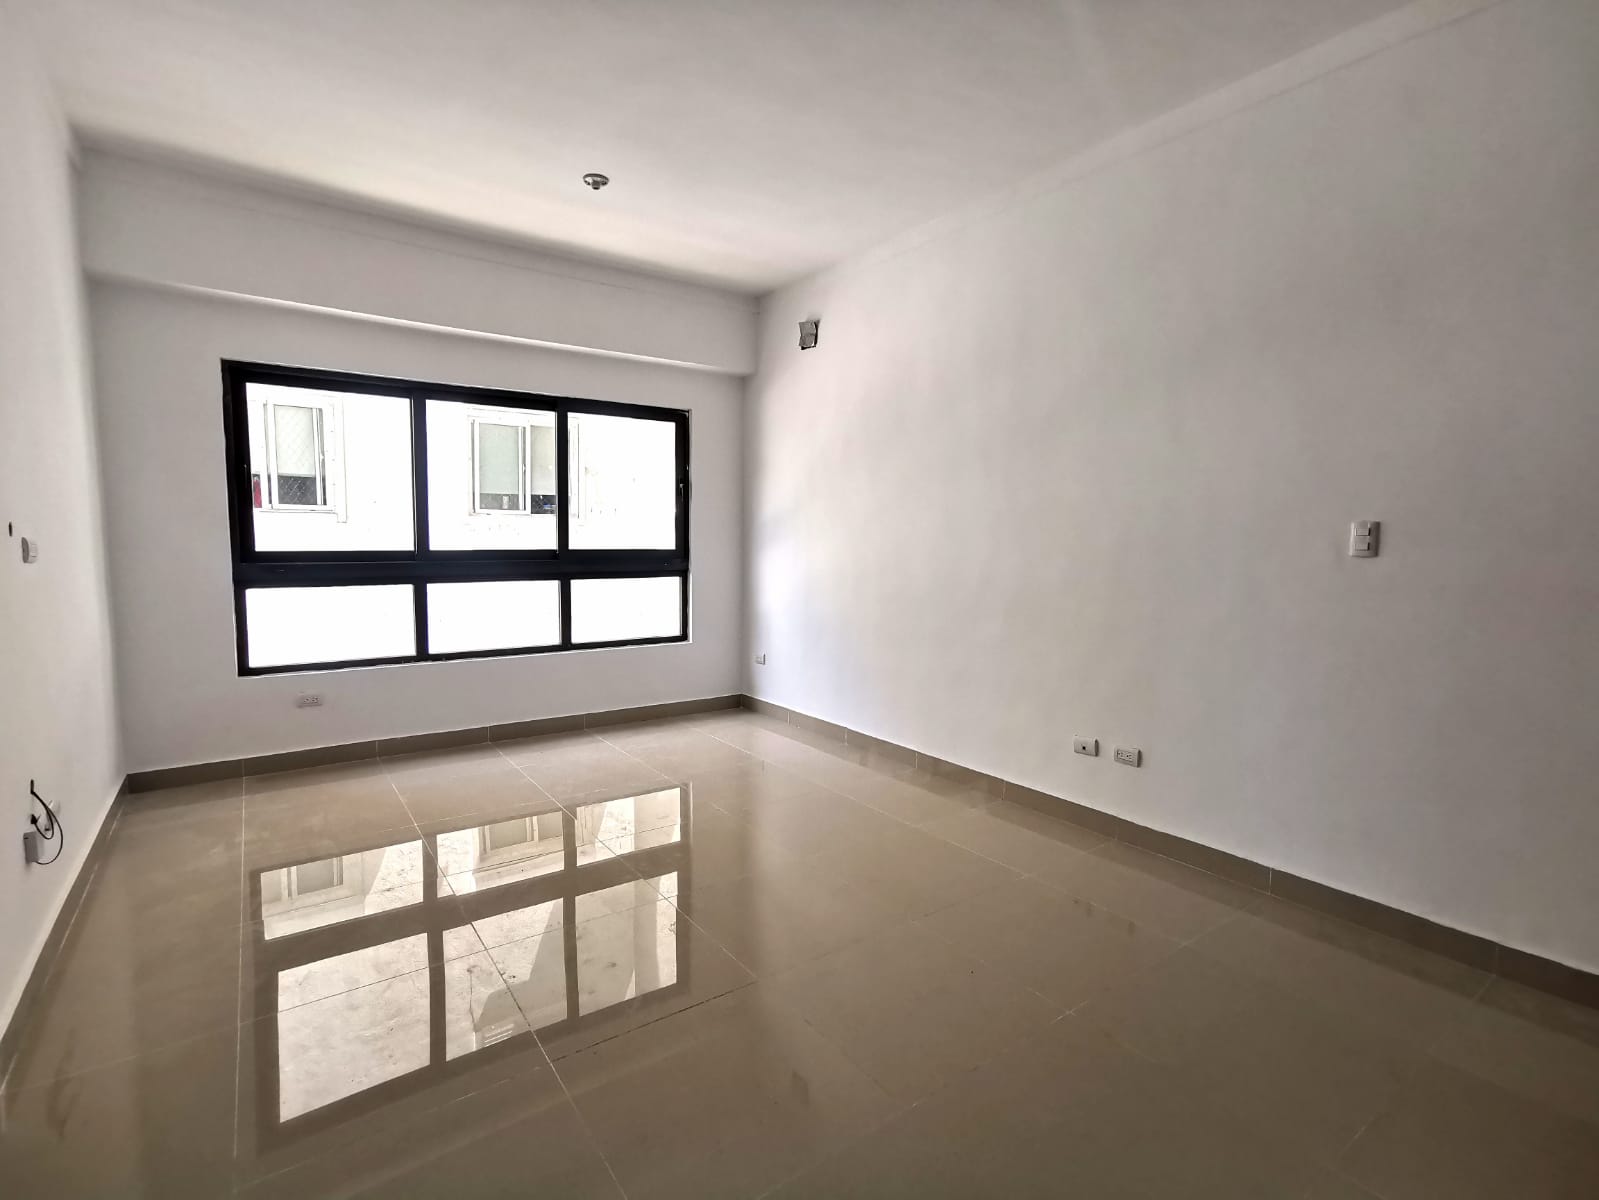 Apartamento en alquiler con línea blanca Evaristo Morales a una esquin Foto 7224015-5.jpg